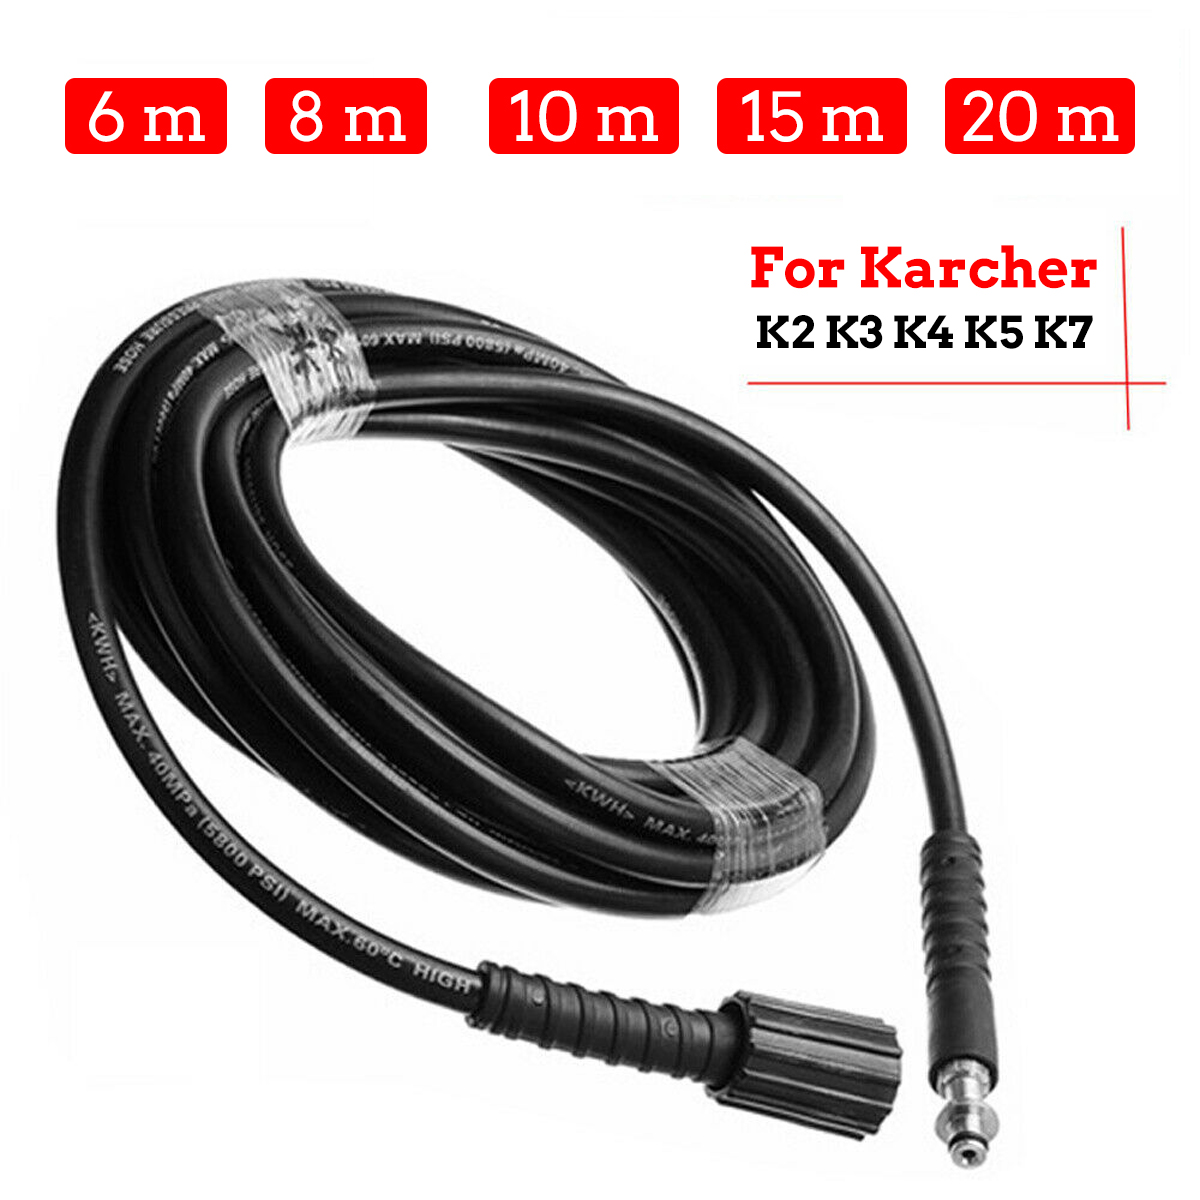 Details about   20m High Pressure Hose For Home KARCHER K2 K3 K4 K5 K7 Quick Connect 